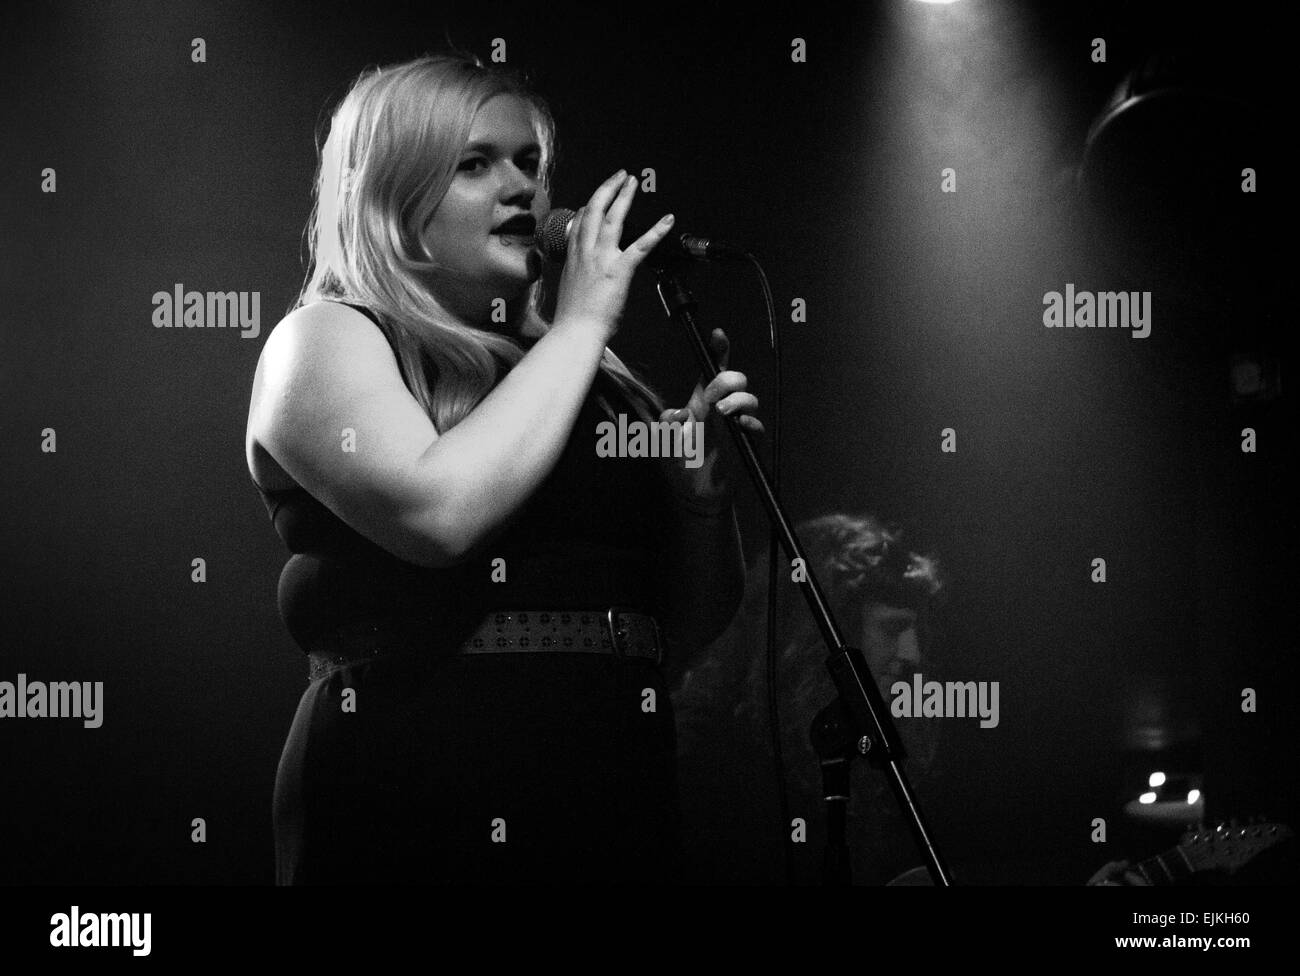 Frau mit blonden, lange, glatte Haare Gesang in ein Mikrofon, während Sie den Ständer in einer Band zu halten. Stockfoto